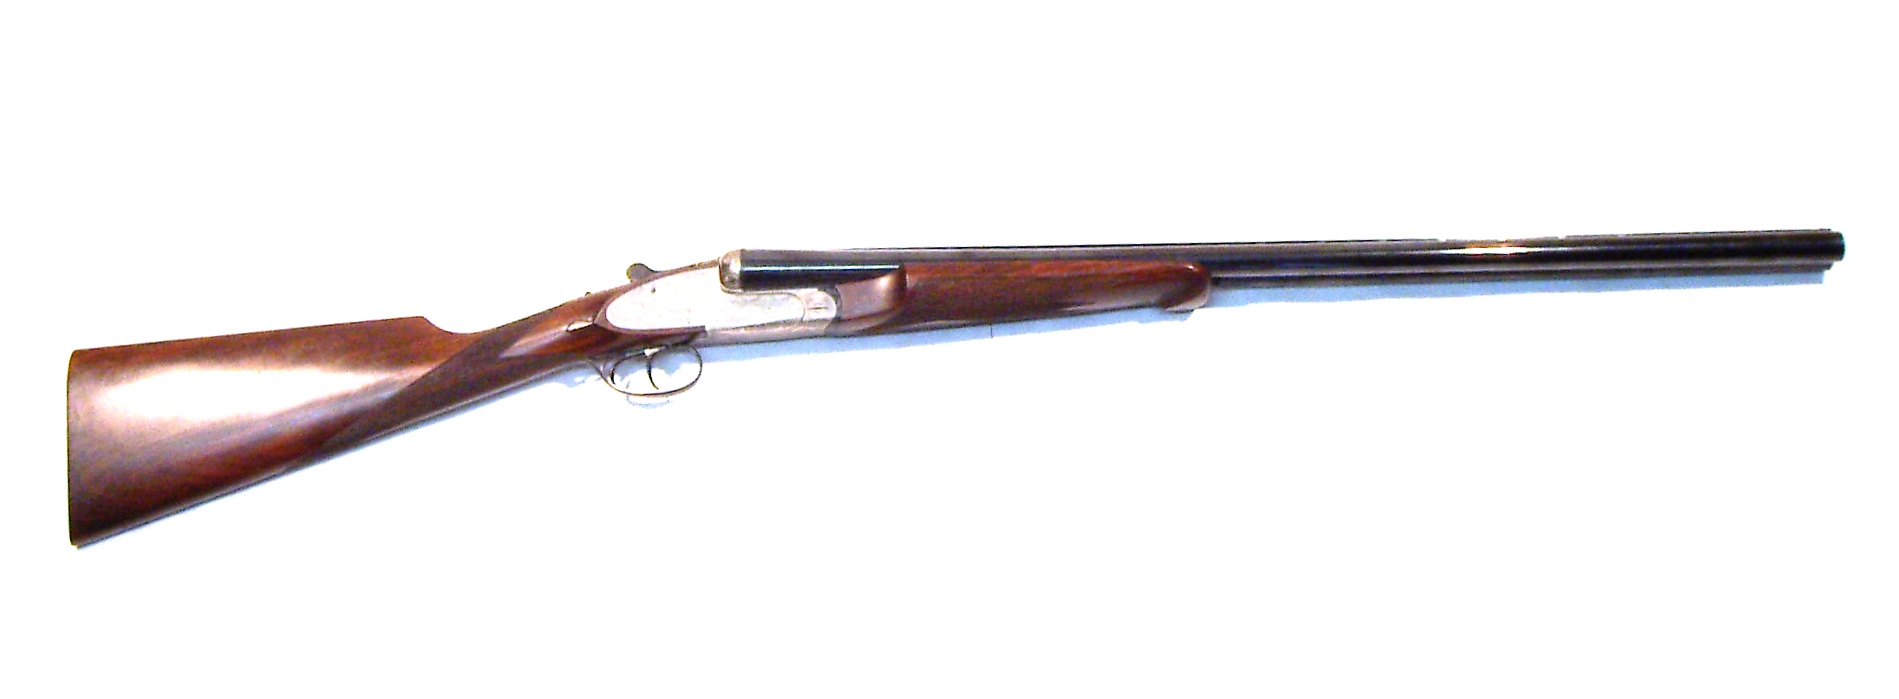 Escopeta UNION ARMERA, modelo 215 R.B.A.A., calibre 12, nº 28736-0